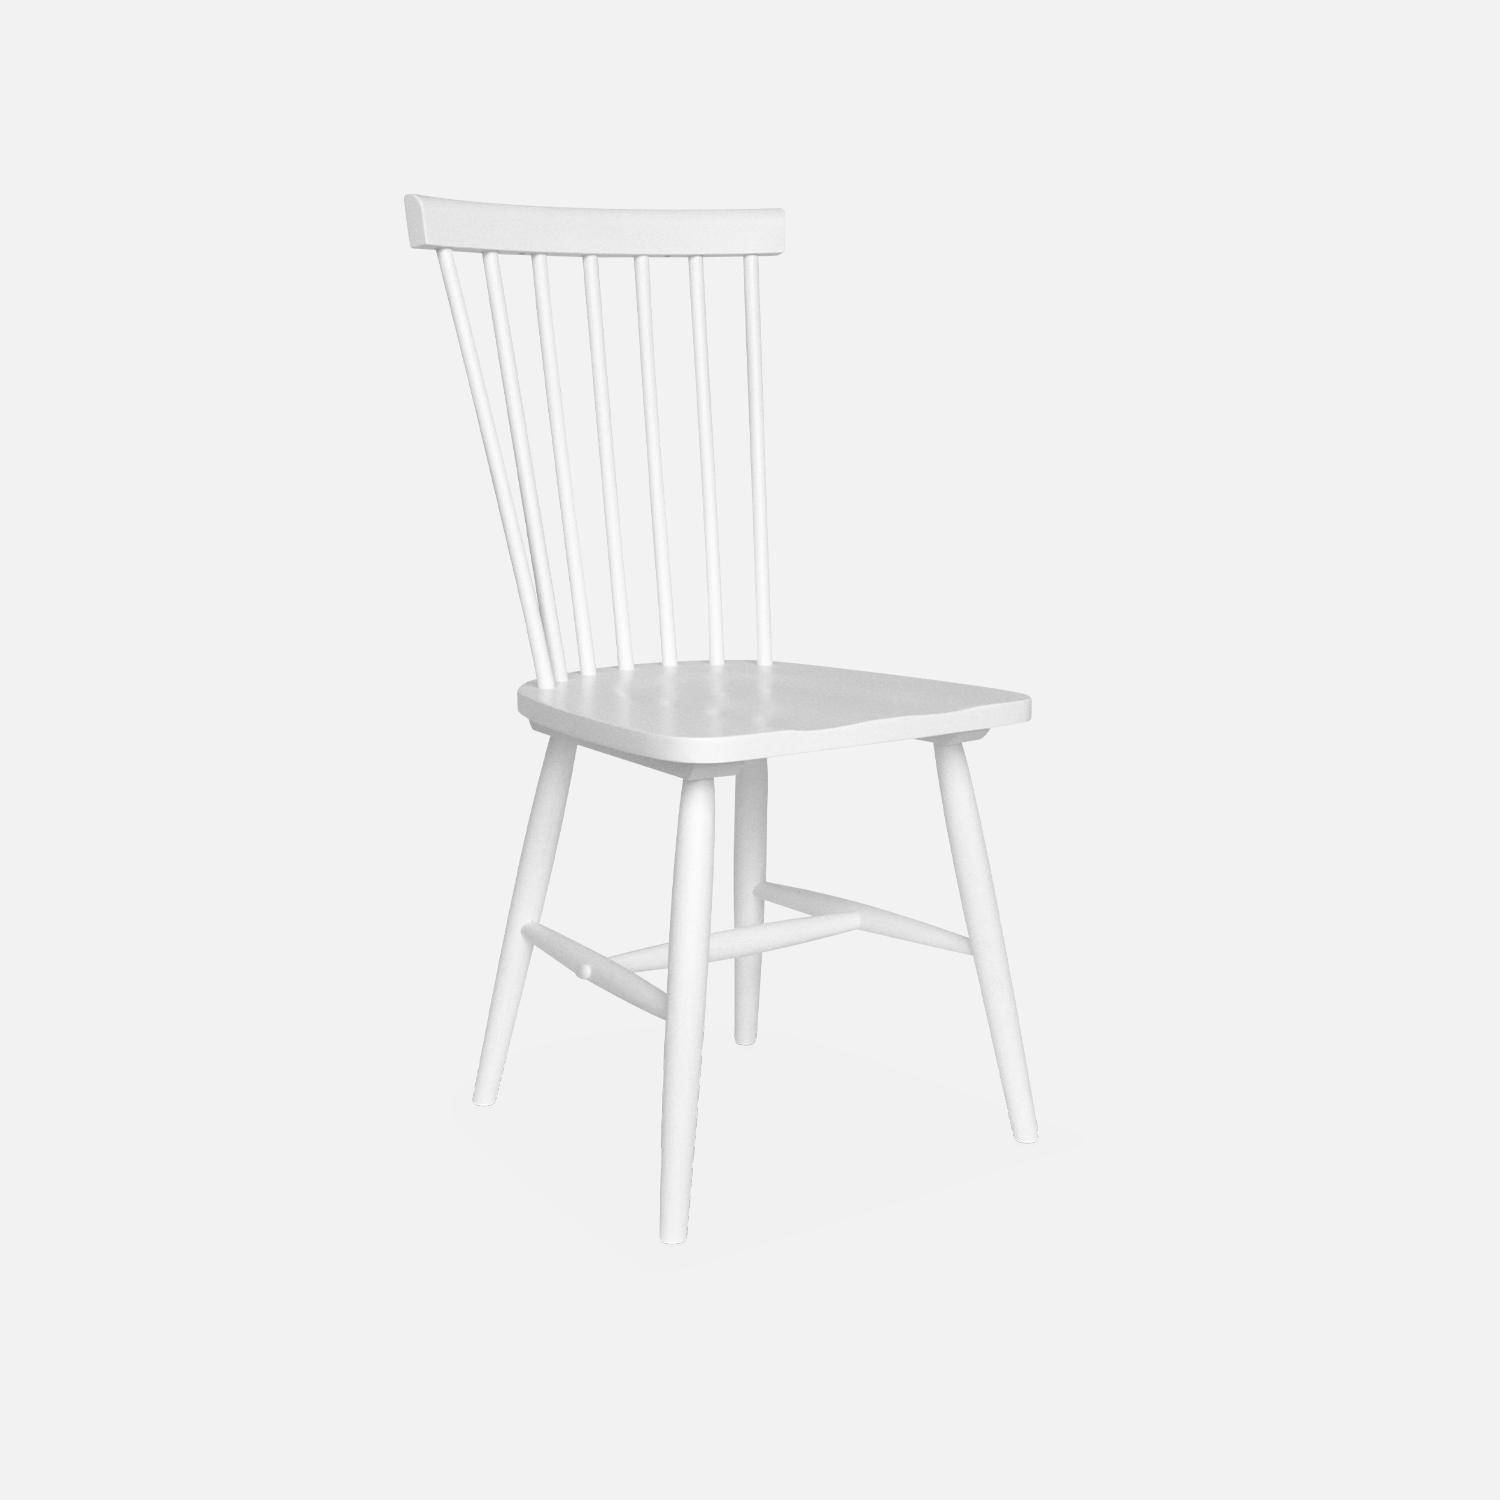 Lot de 2 chaises blanches à barreaux en bois d'hévéa, ROMIE, L 50,8 x P 44,2 x H 90cm. Livraison offerte, garantie 2 ans, meilleur prix garanti !  Photo5